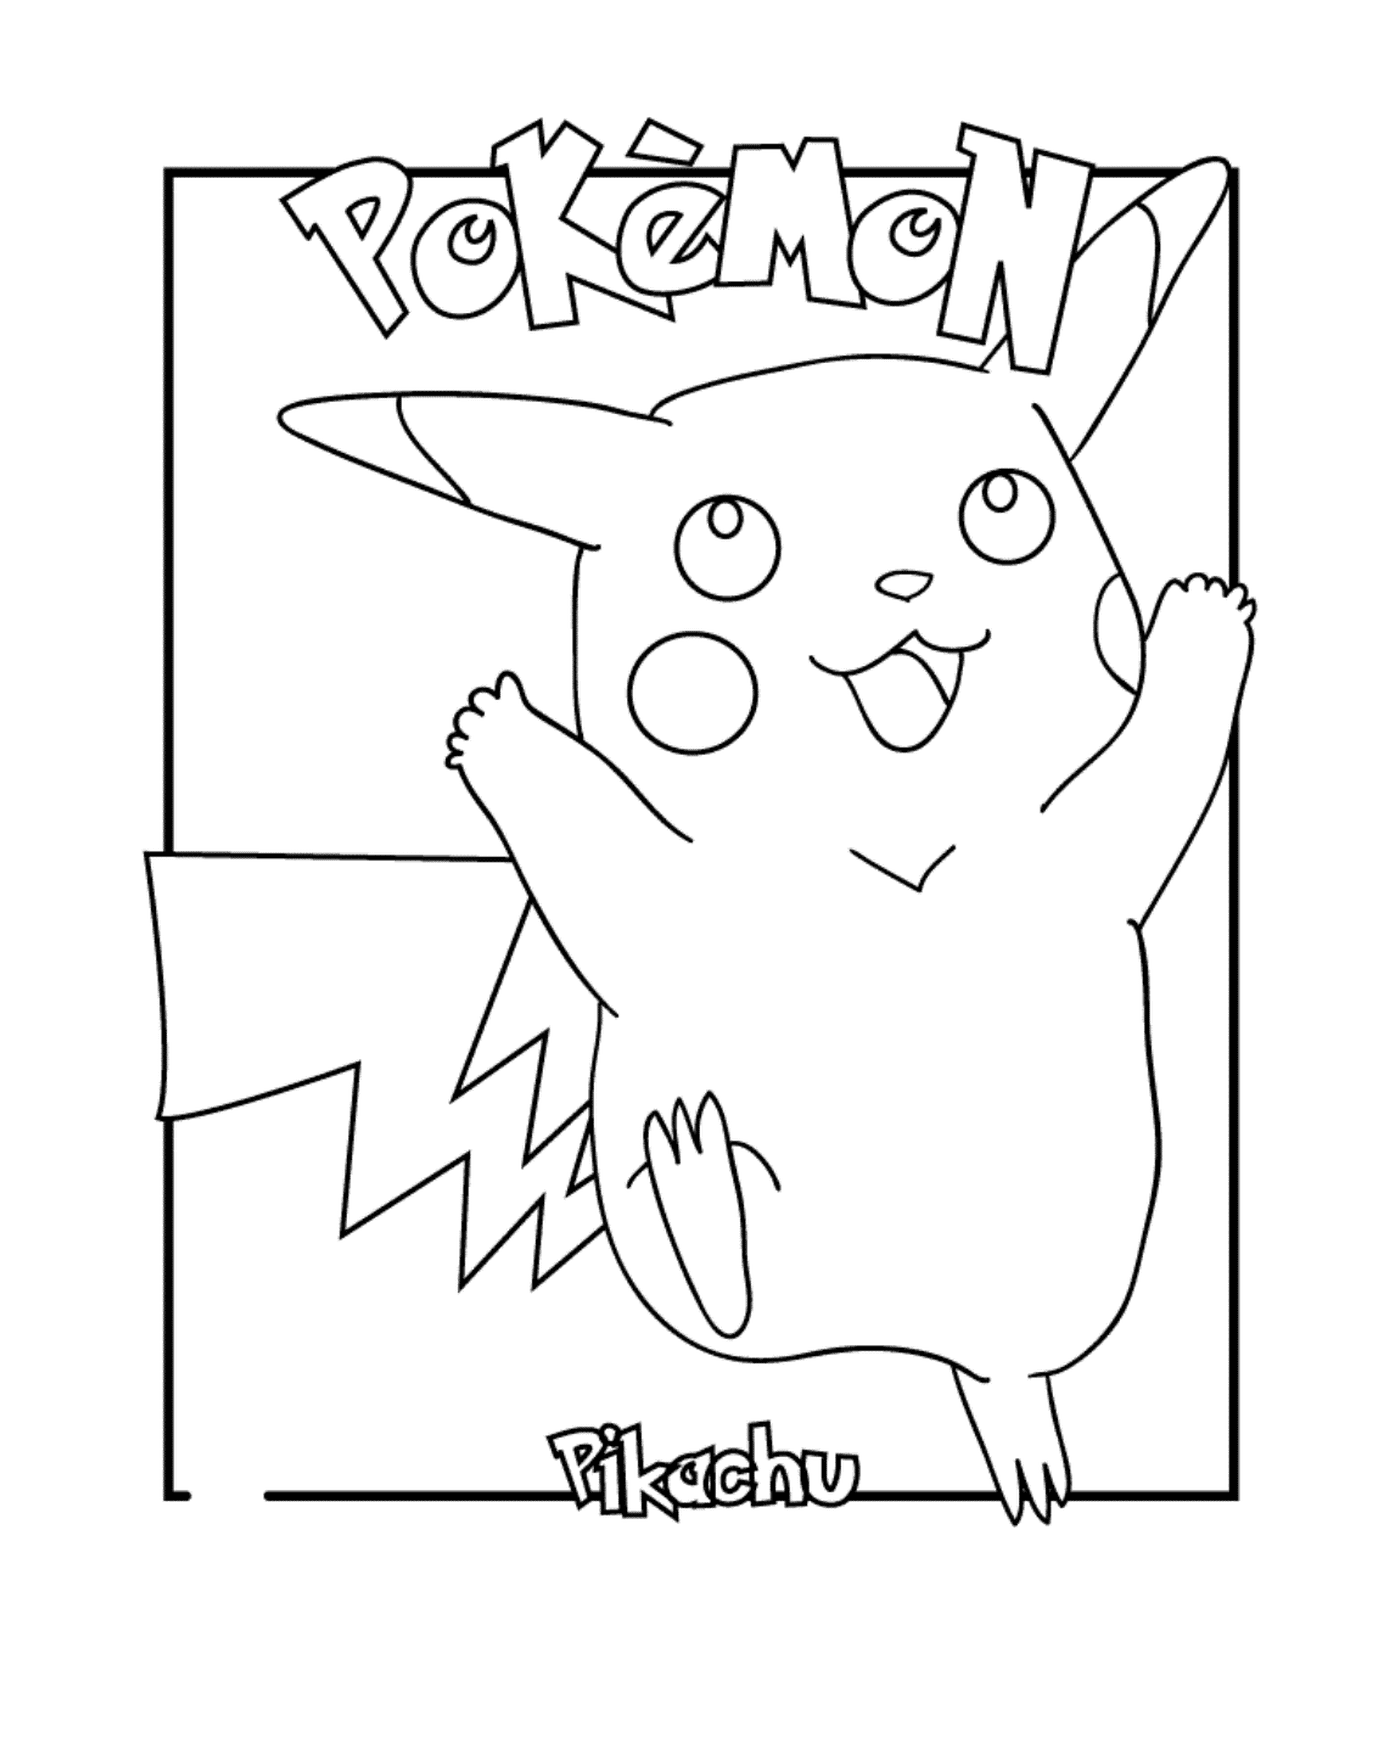   Pikachu, le Pokémon adoré 